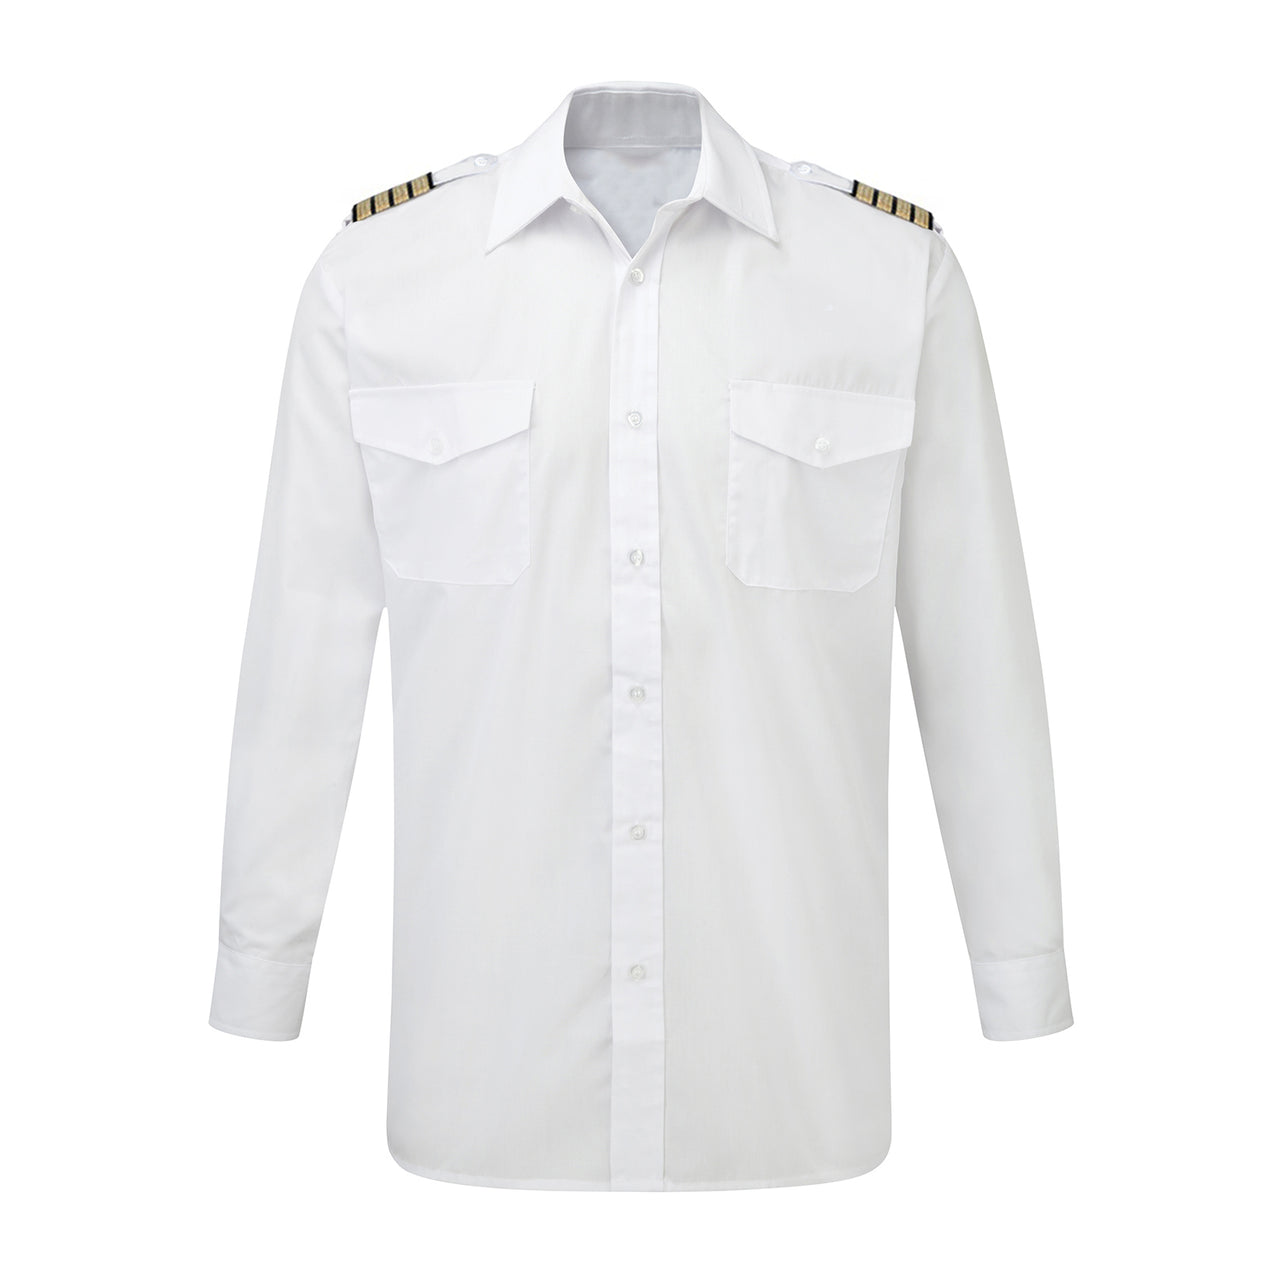 No Design Super Quality (4,3,2,1 Lines) Long Sleeve Pilot Shirts